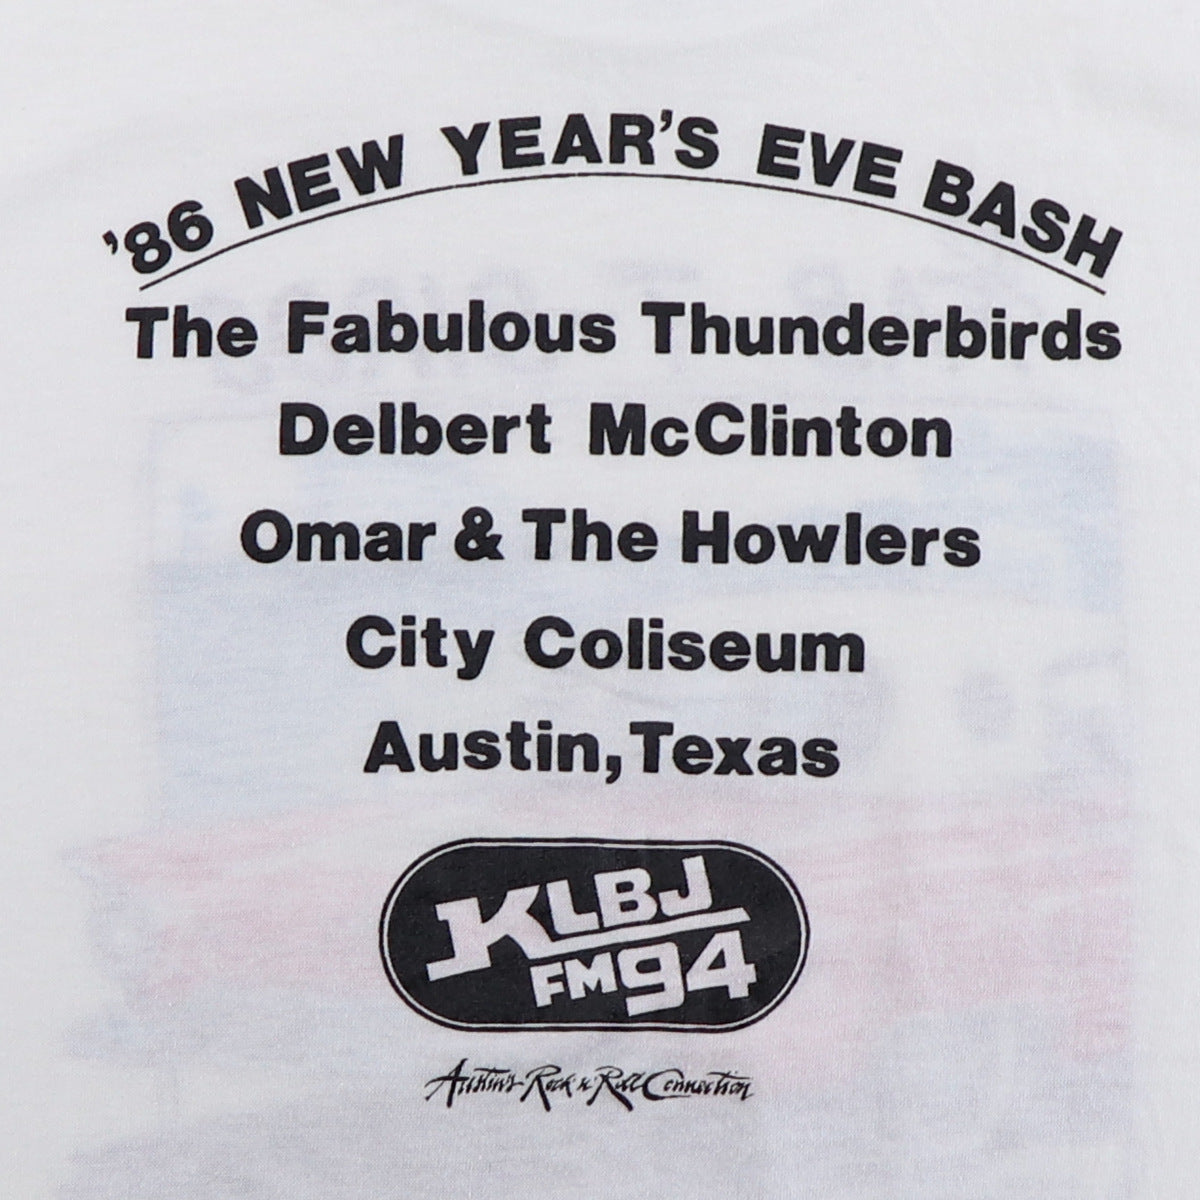 1986 Fabulous Thunderbirds New Year's Eve Bash Shirt